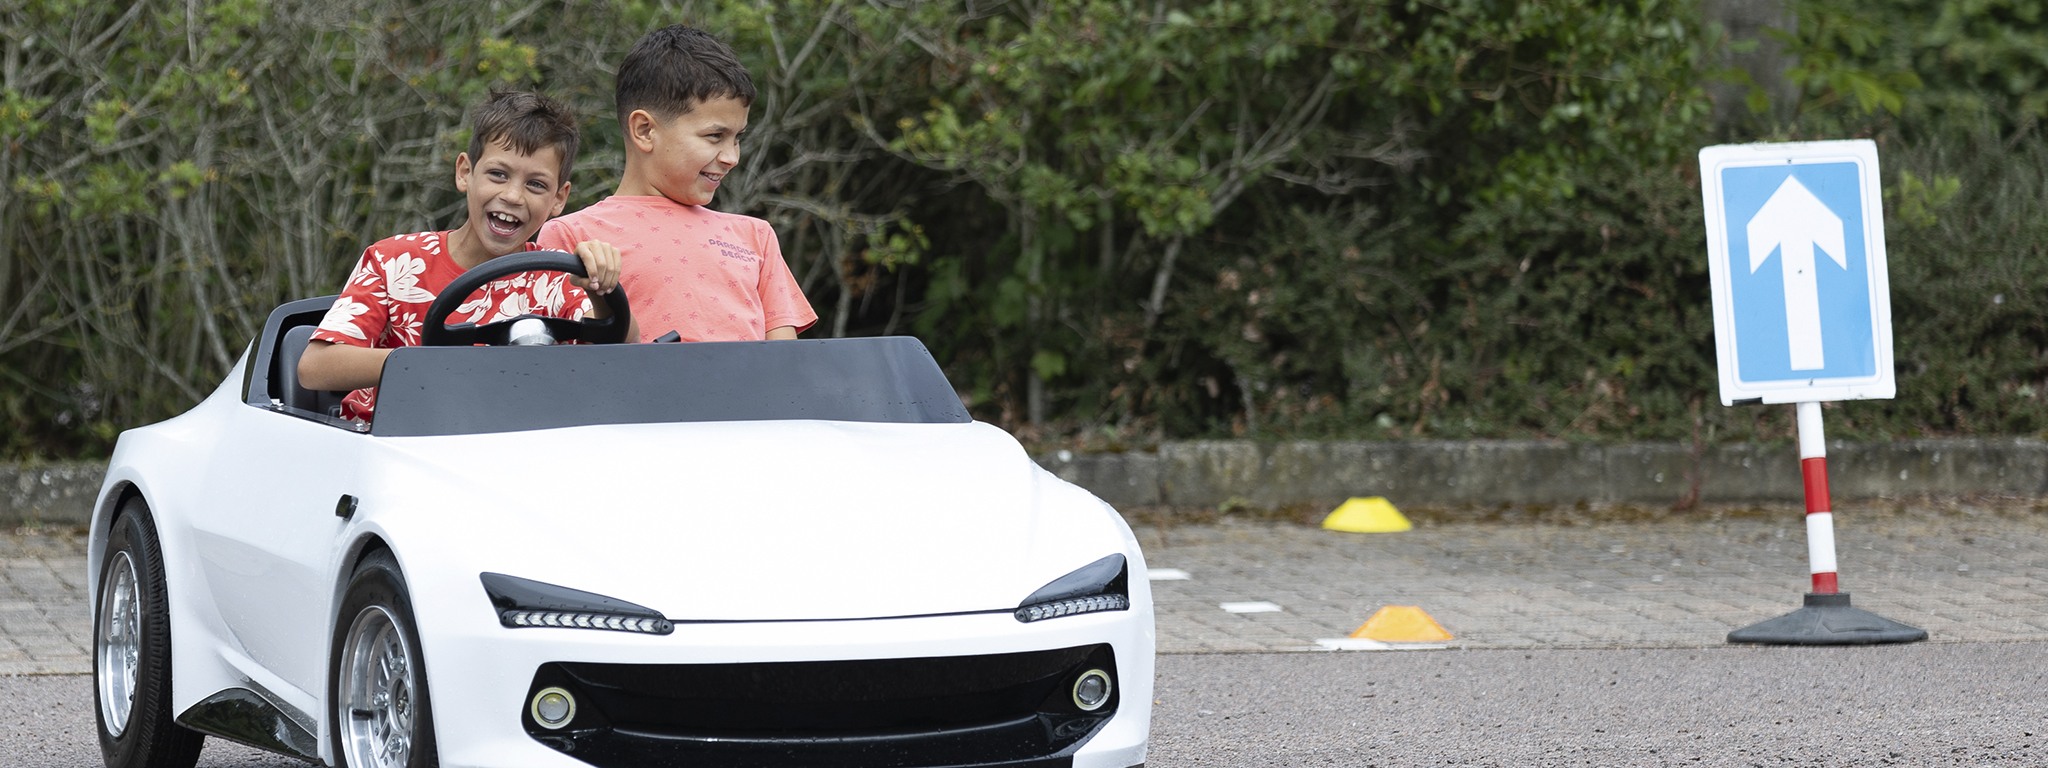 2 jeunes sourient en conduisant une voiture de pratique miniature blanche de Young Driver